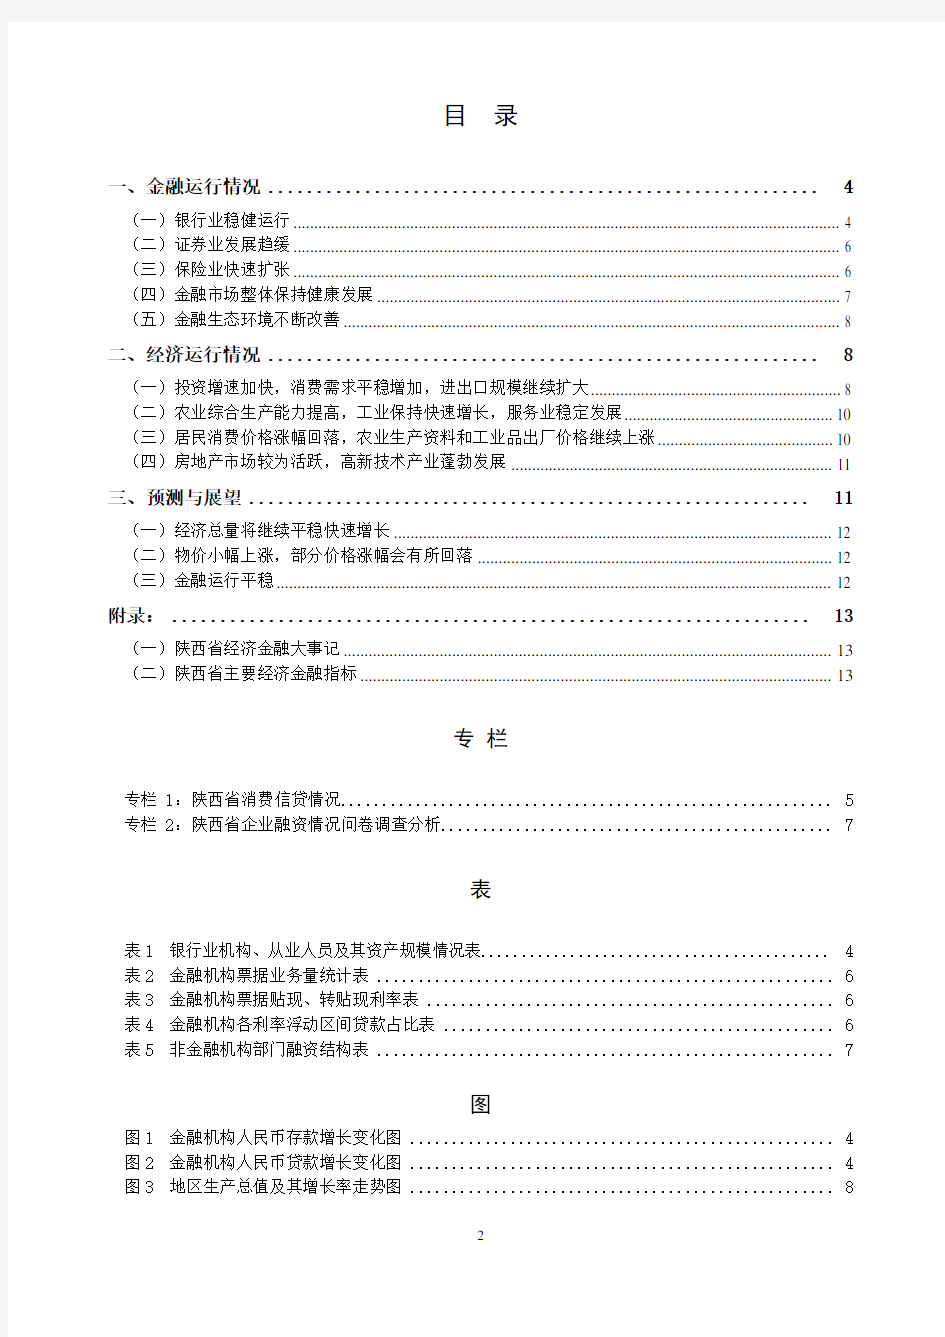 2005年陕西省金融运行报告